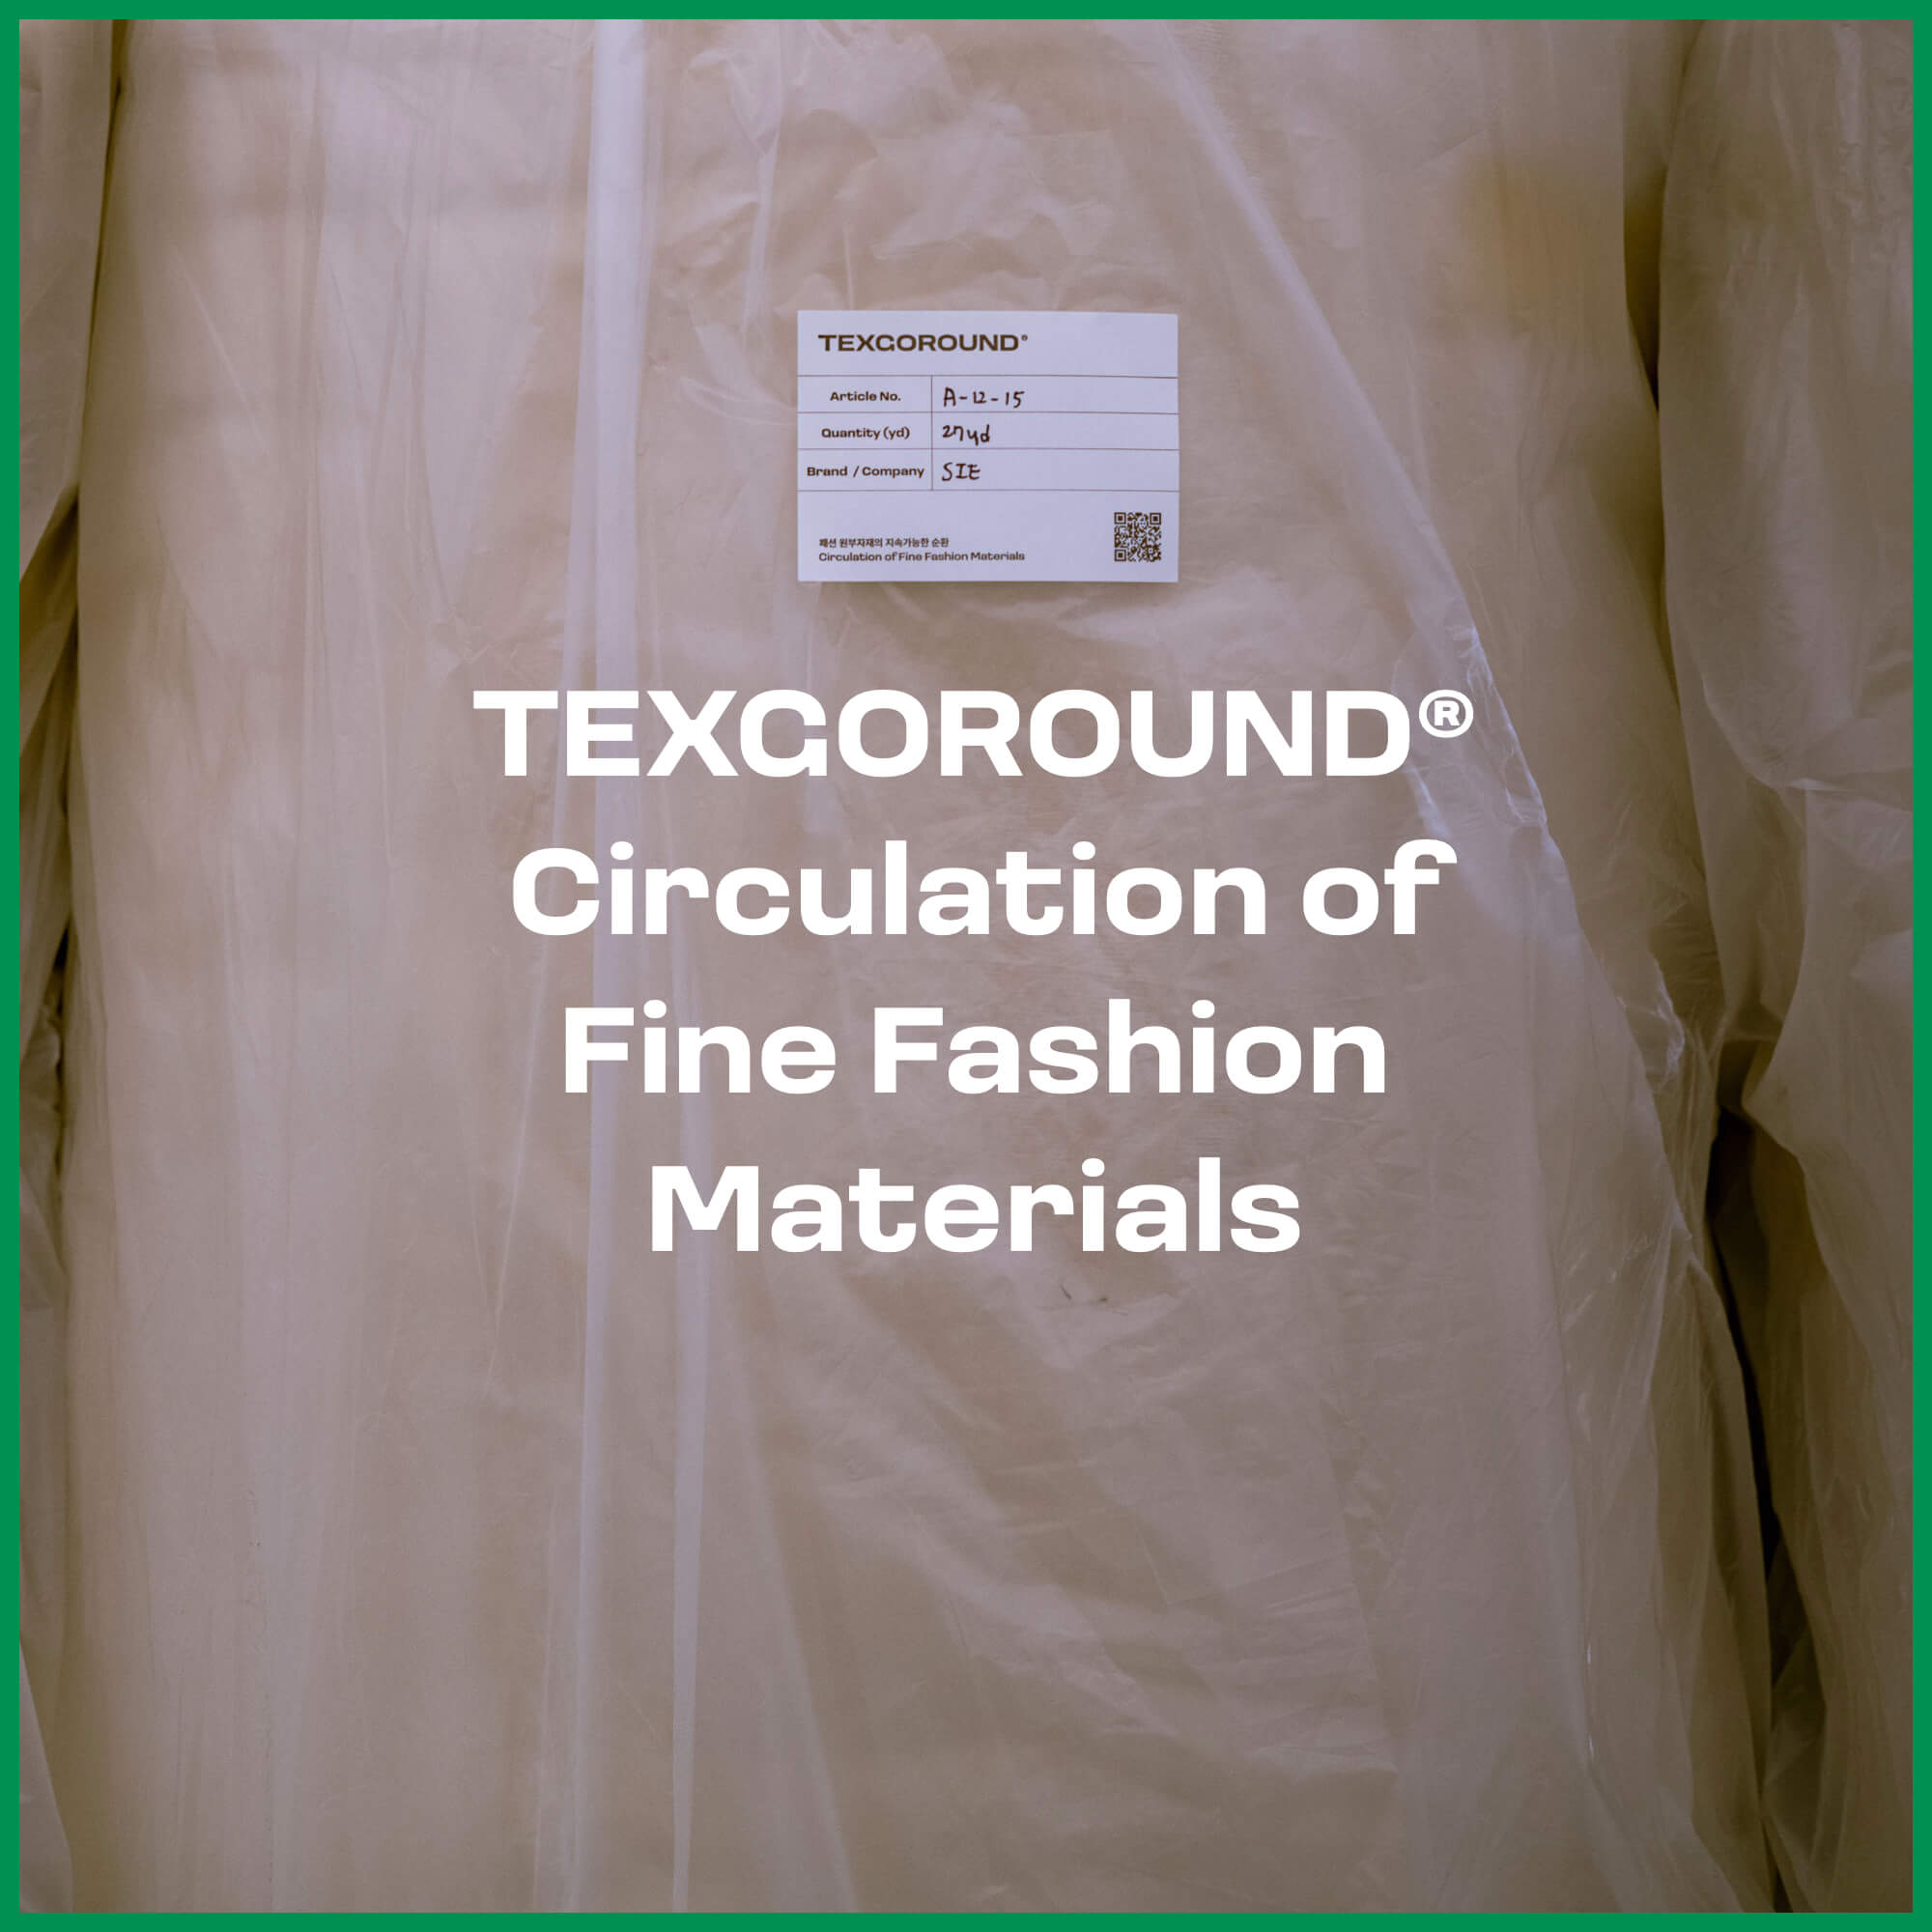 텍스고라운드 (TEXGOROUND®), 고품질 원부자재의 지속가능한 순환